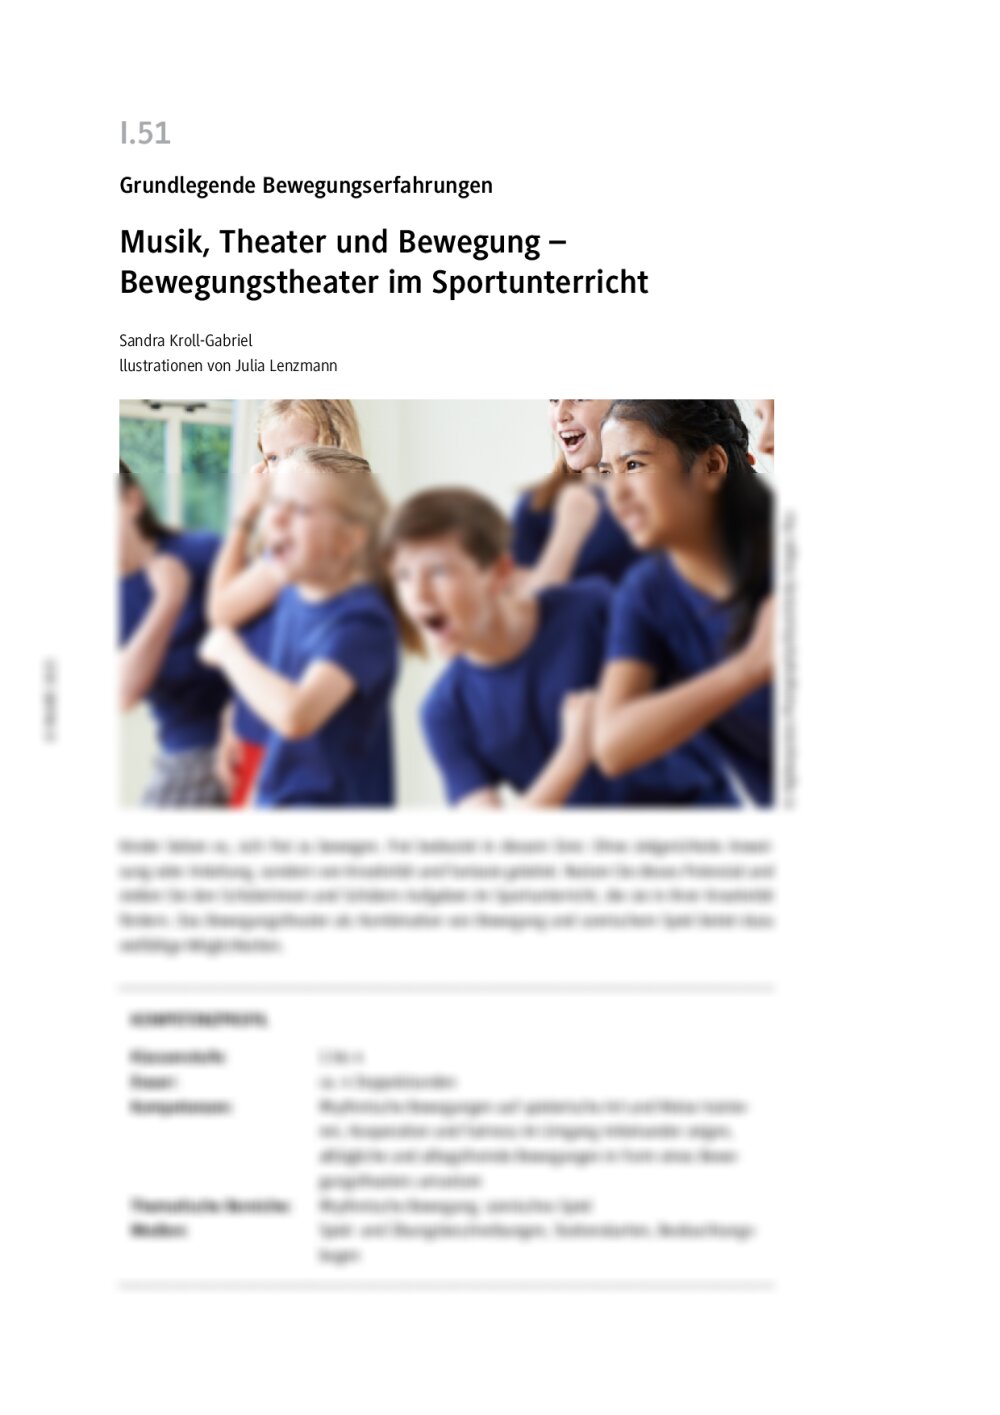 Musik, Theater und Bewegung - Seite 1